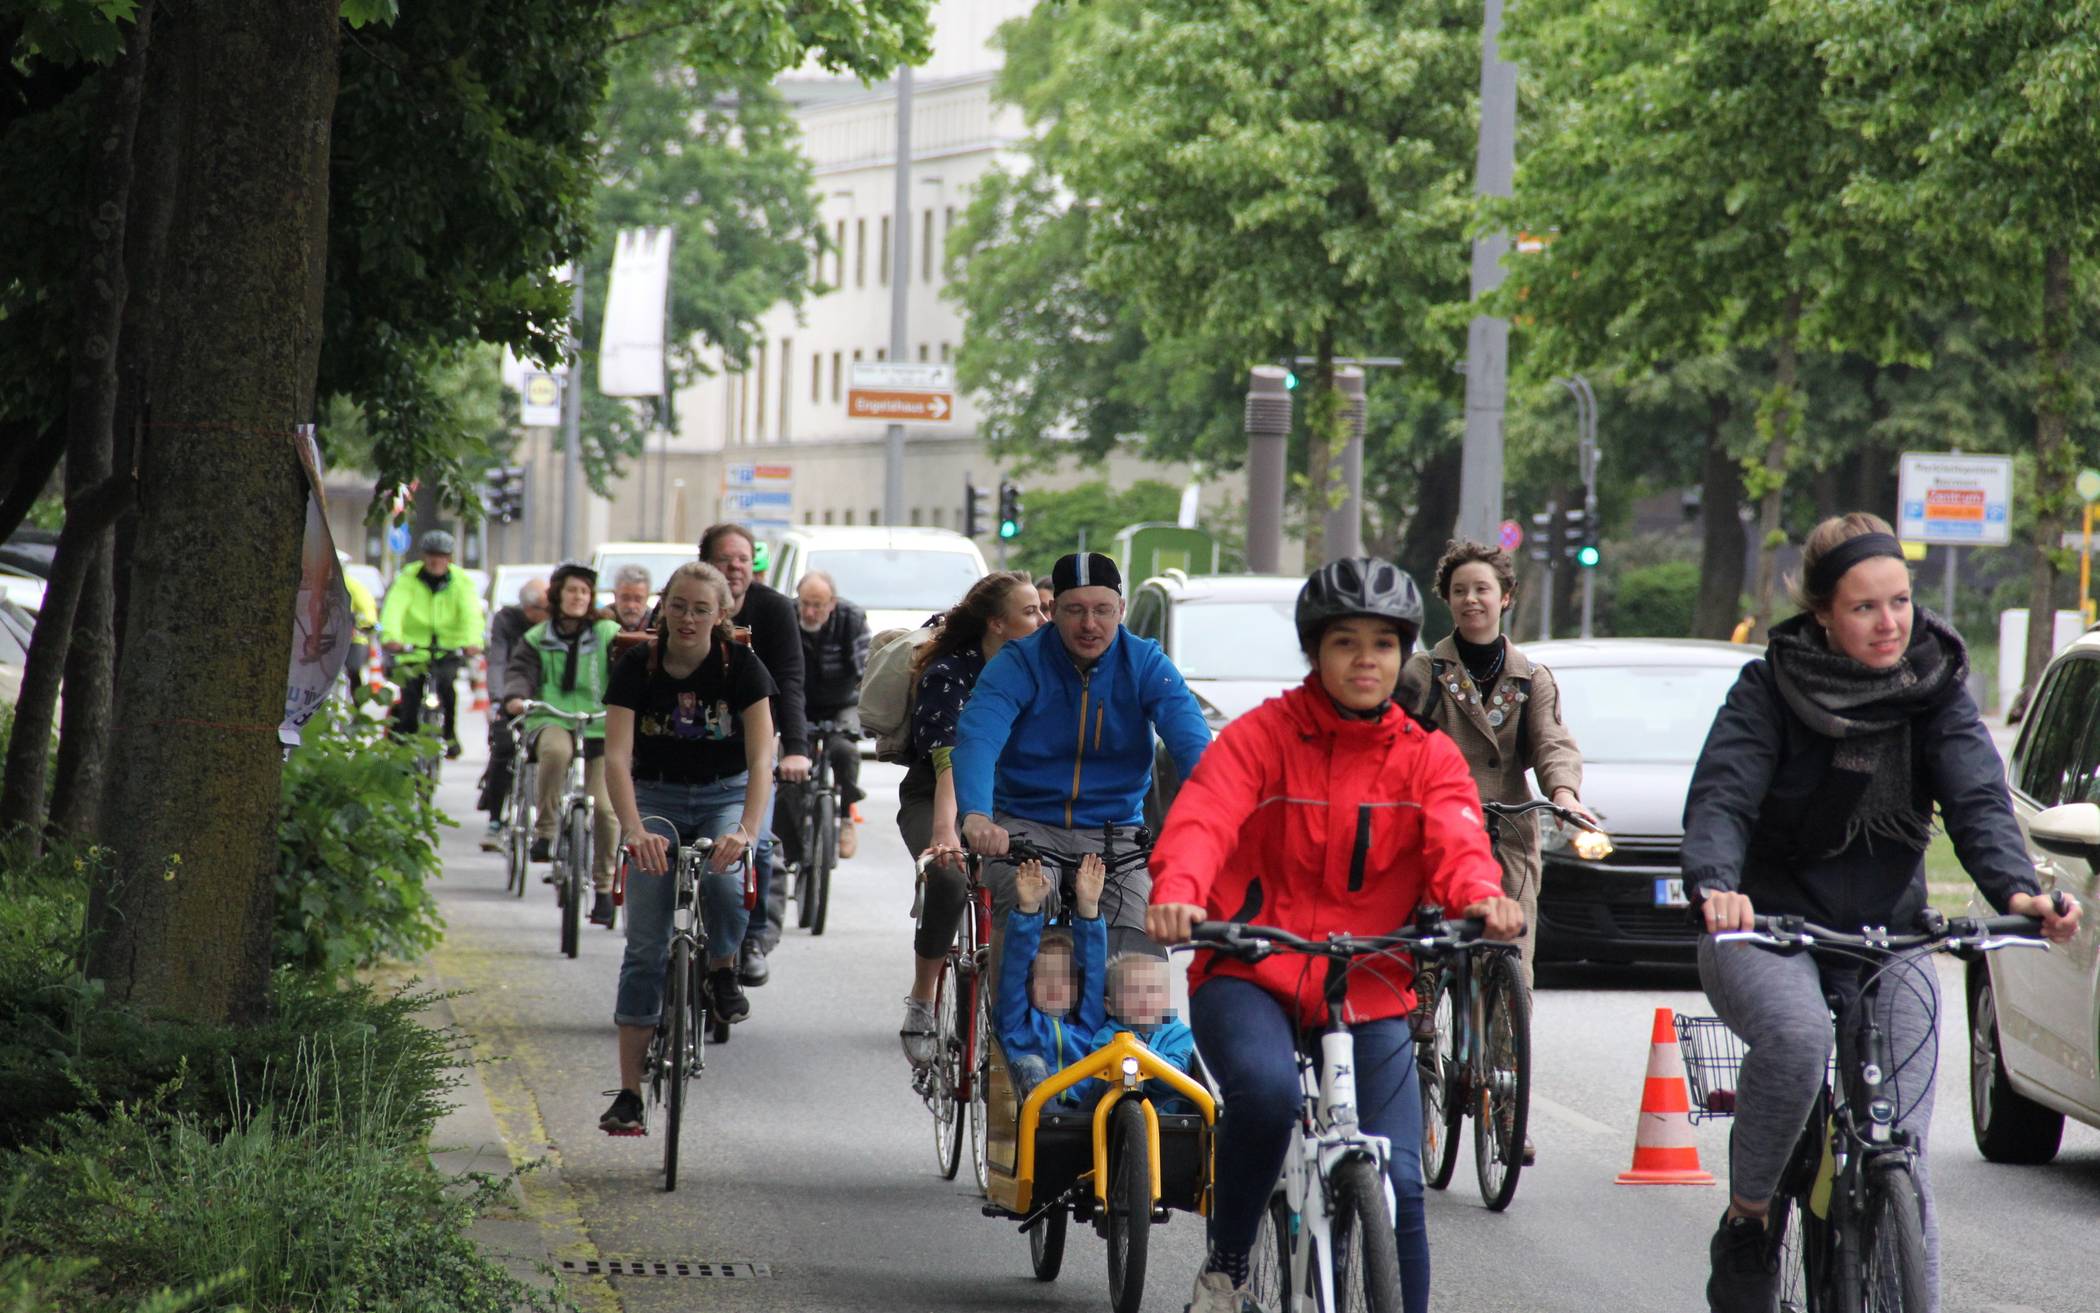  Jede Menge Räder auf der Straße: Das gibt’s bei der Aktion „Kidical Mass“ auch in Wuppertal.  